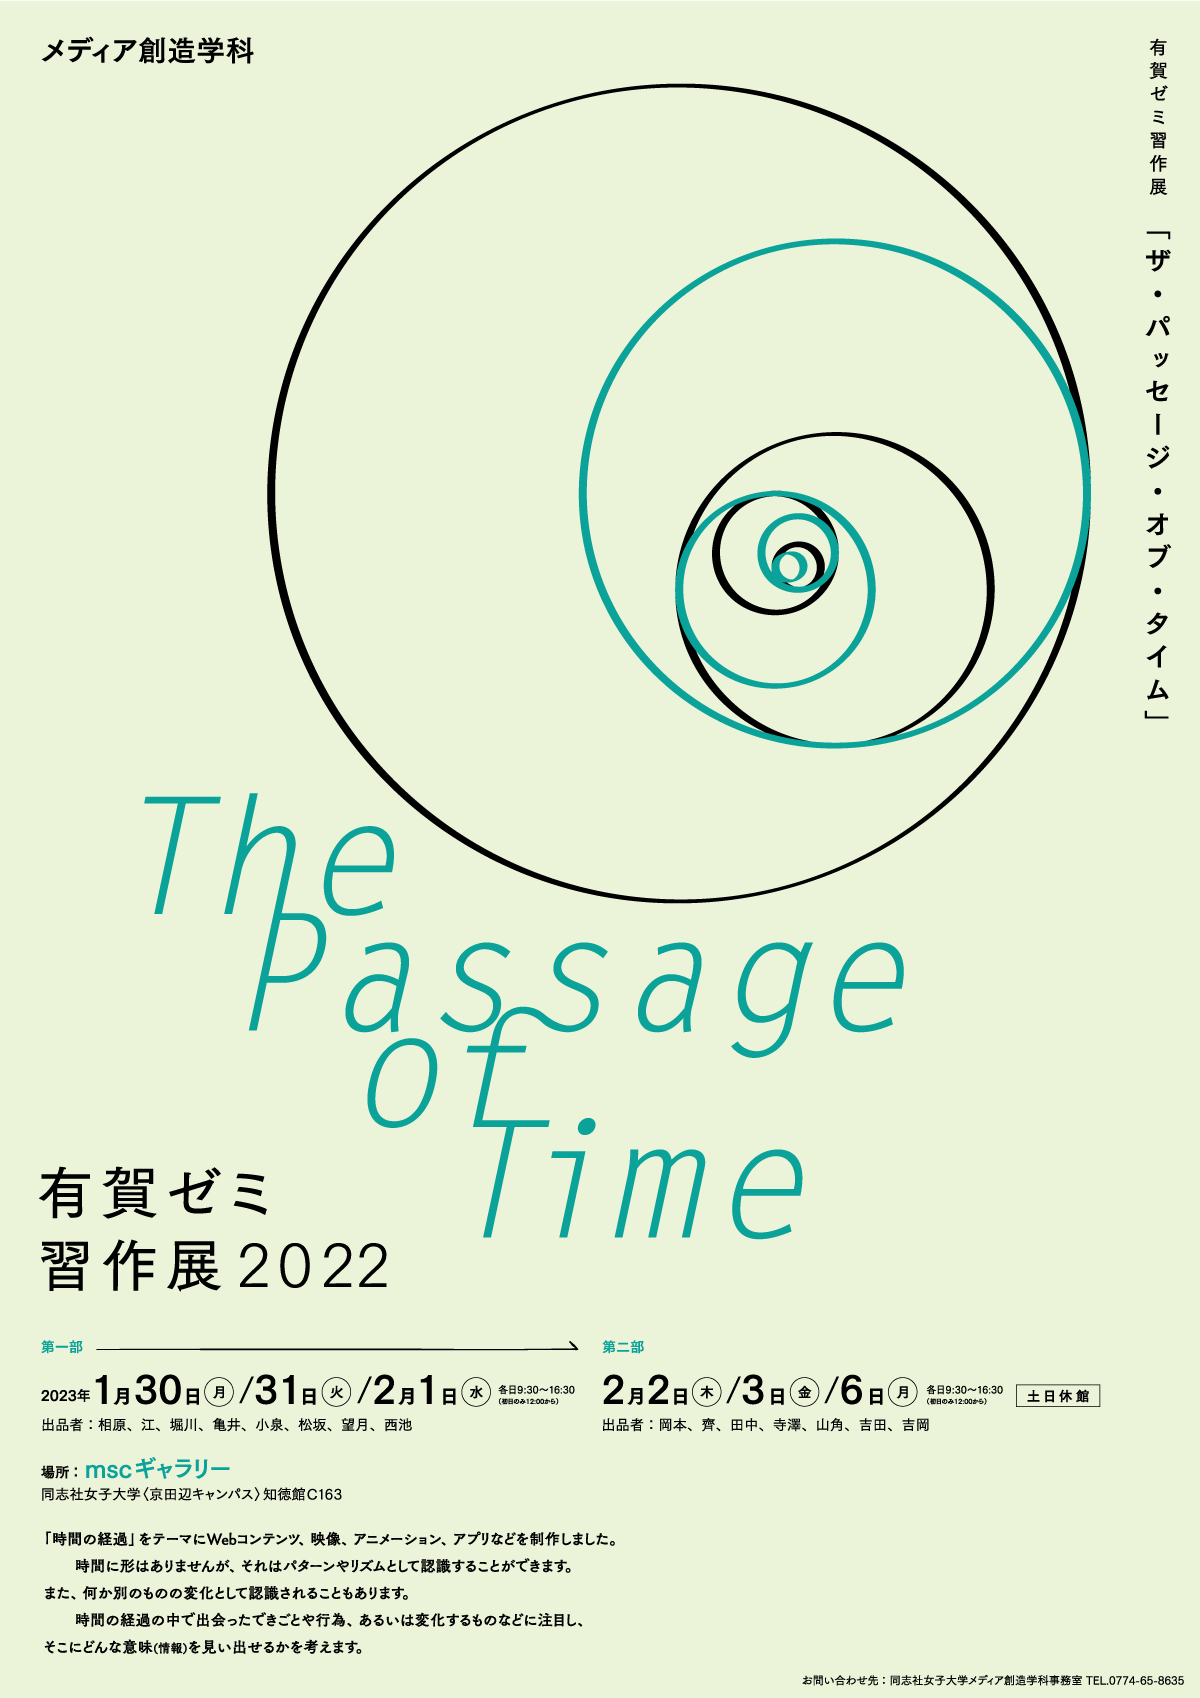 有賀ゼミ習作展2022「The Passage of Time」